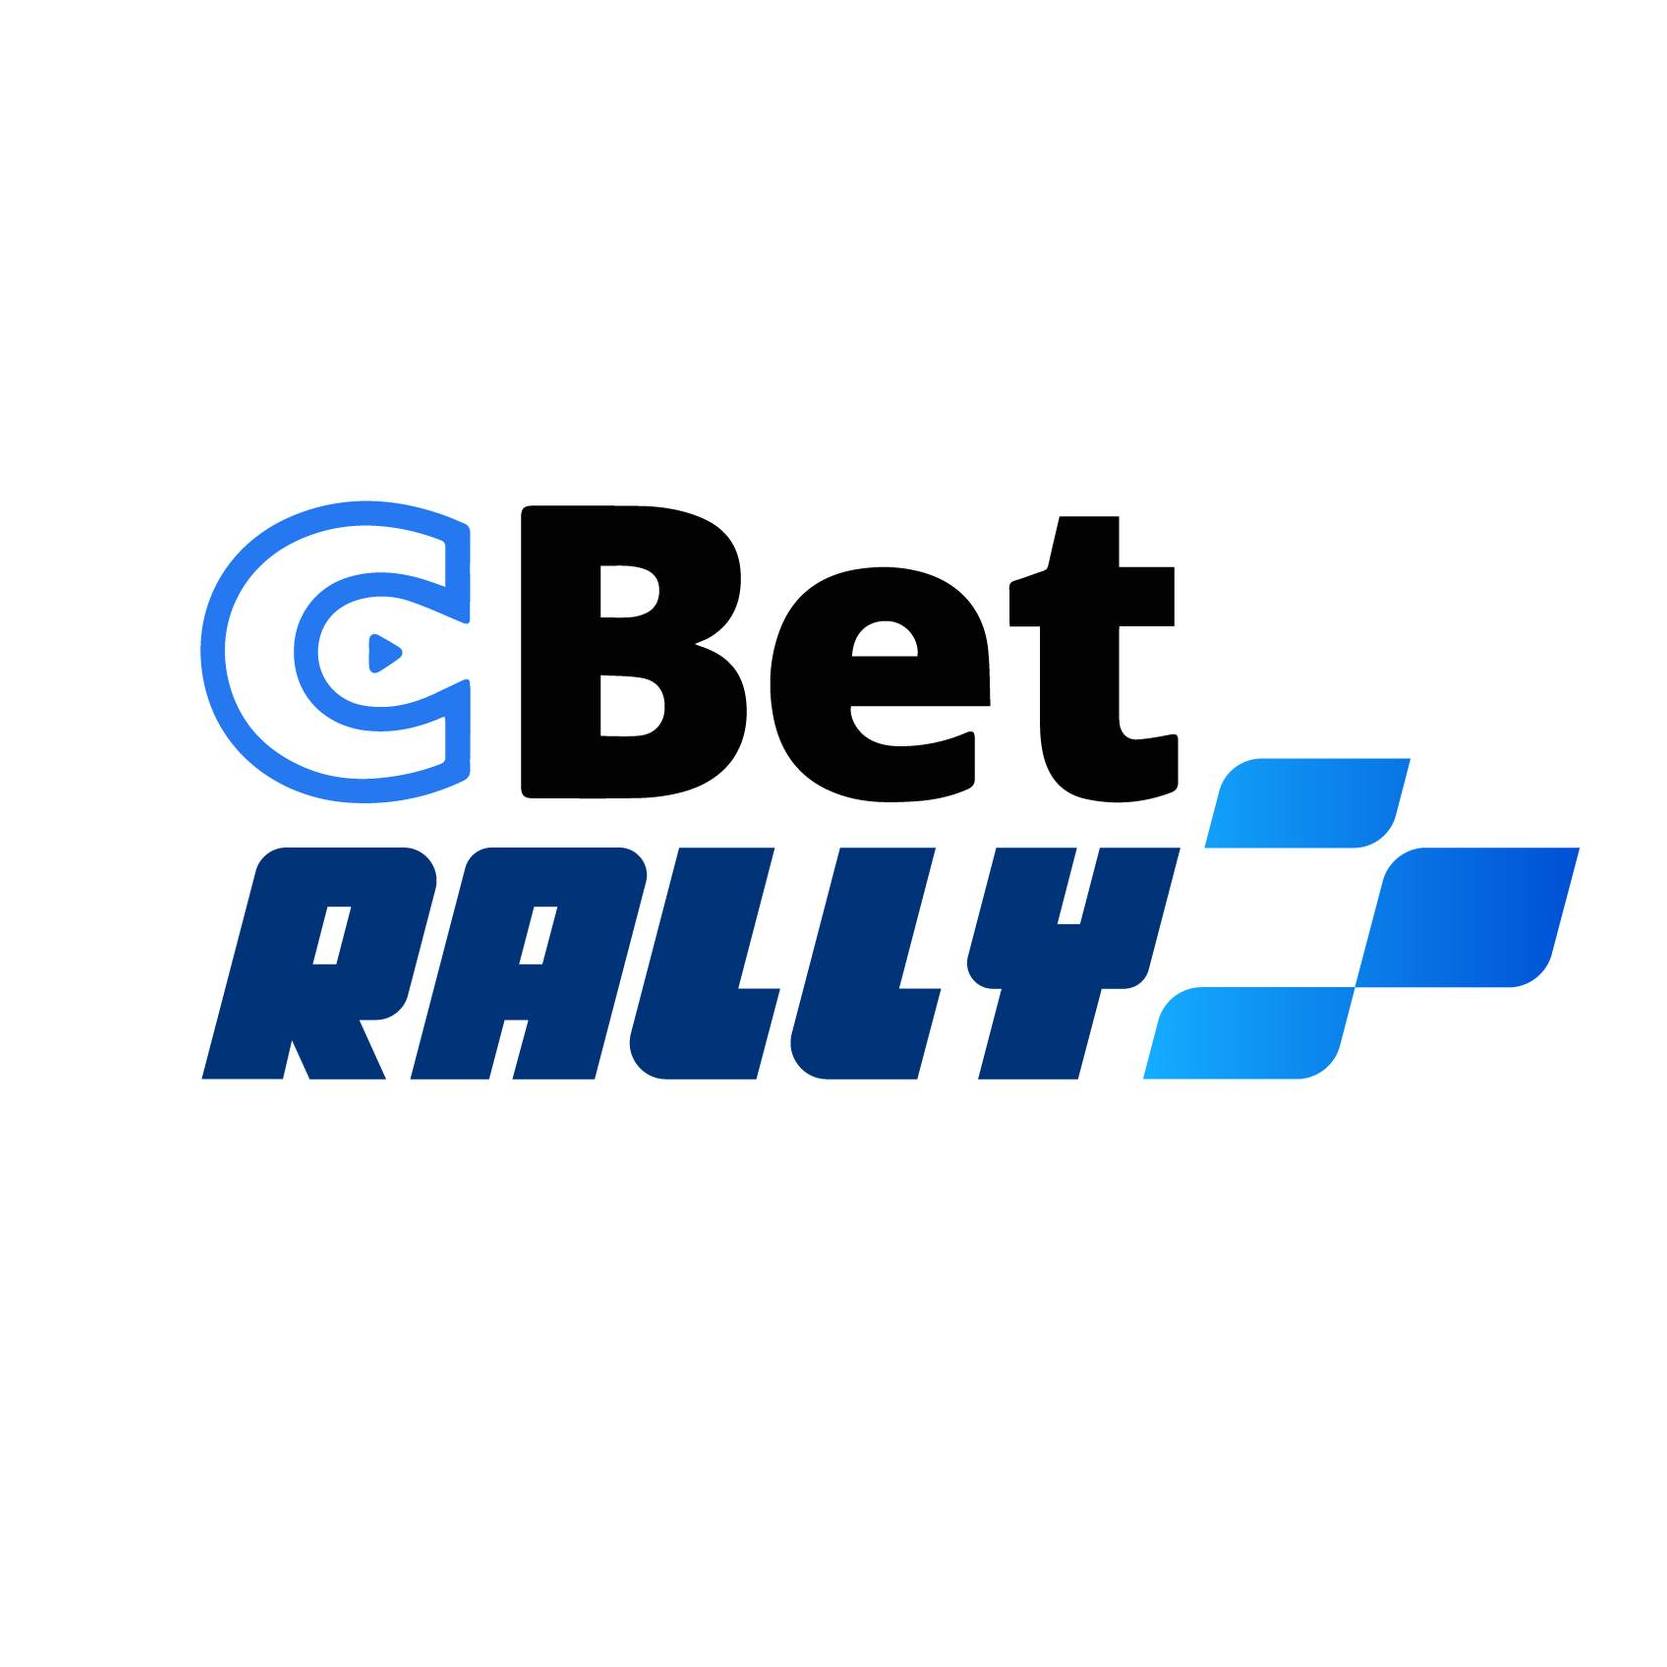 CBet Rally Rokiškis -2022 rugpjūčio 12-14 dienomis